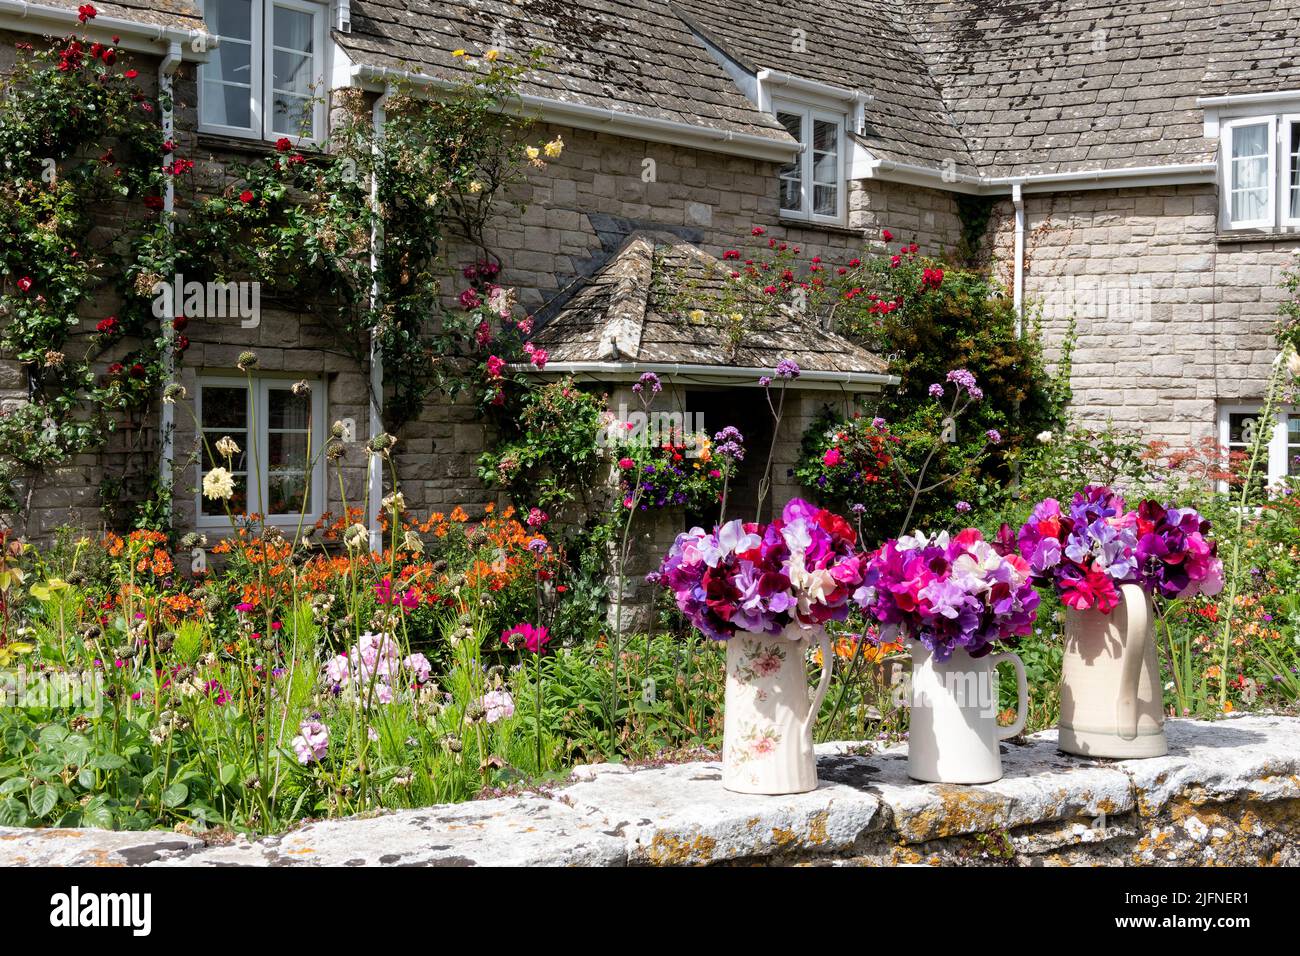 Un bonito jardín de cabaña inglés en flor en un día soleado. Las flores cortadas en jarras se colocan en la pared del jardín como telón de fondo de las plantas tradicionales Foto de stock